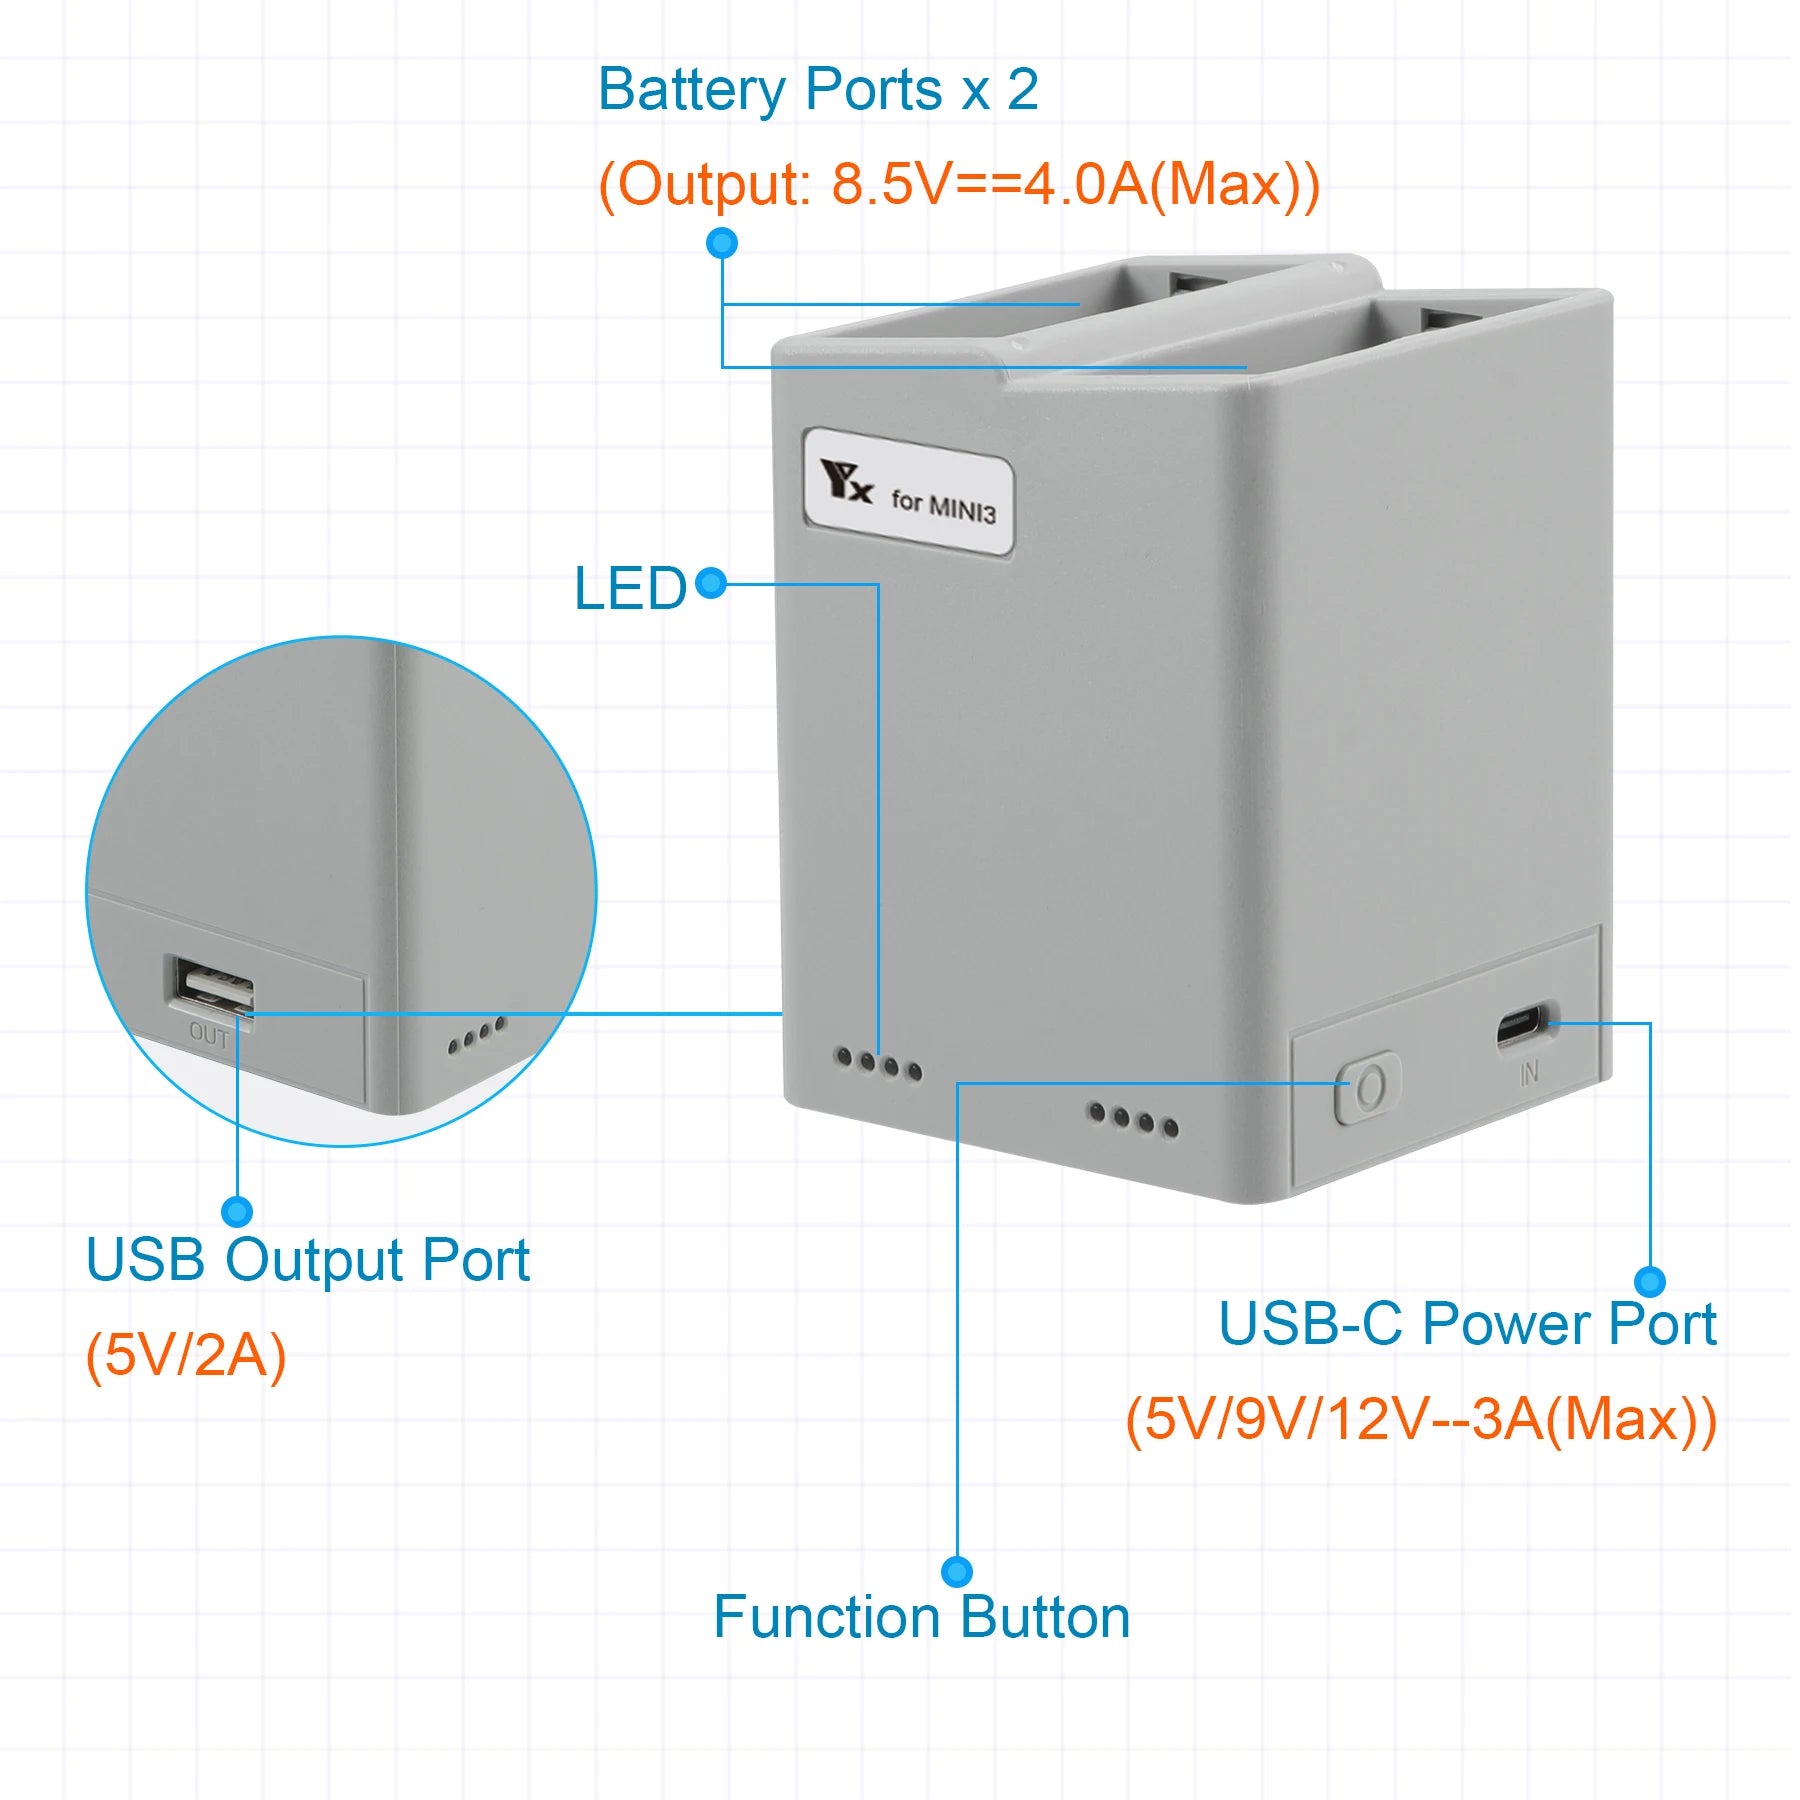 USB-C Power Ports x 2 (Output: 8.5V==4.0